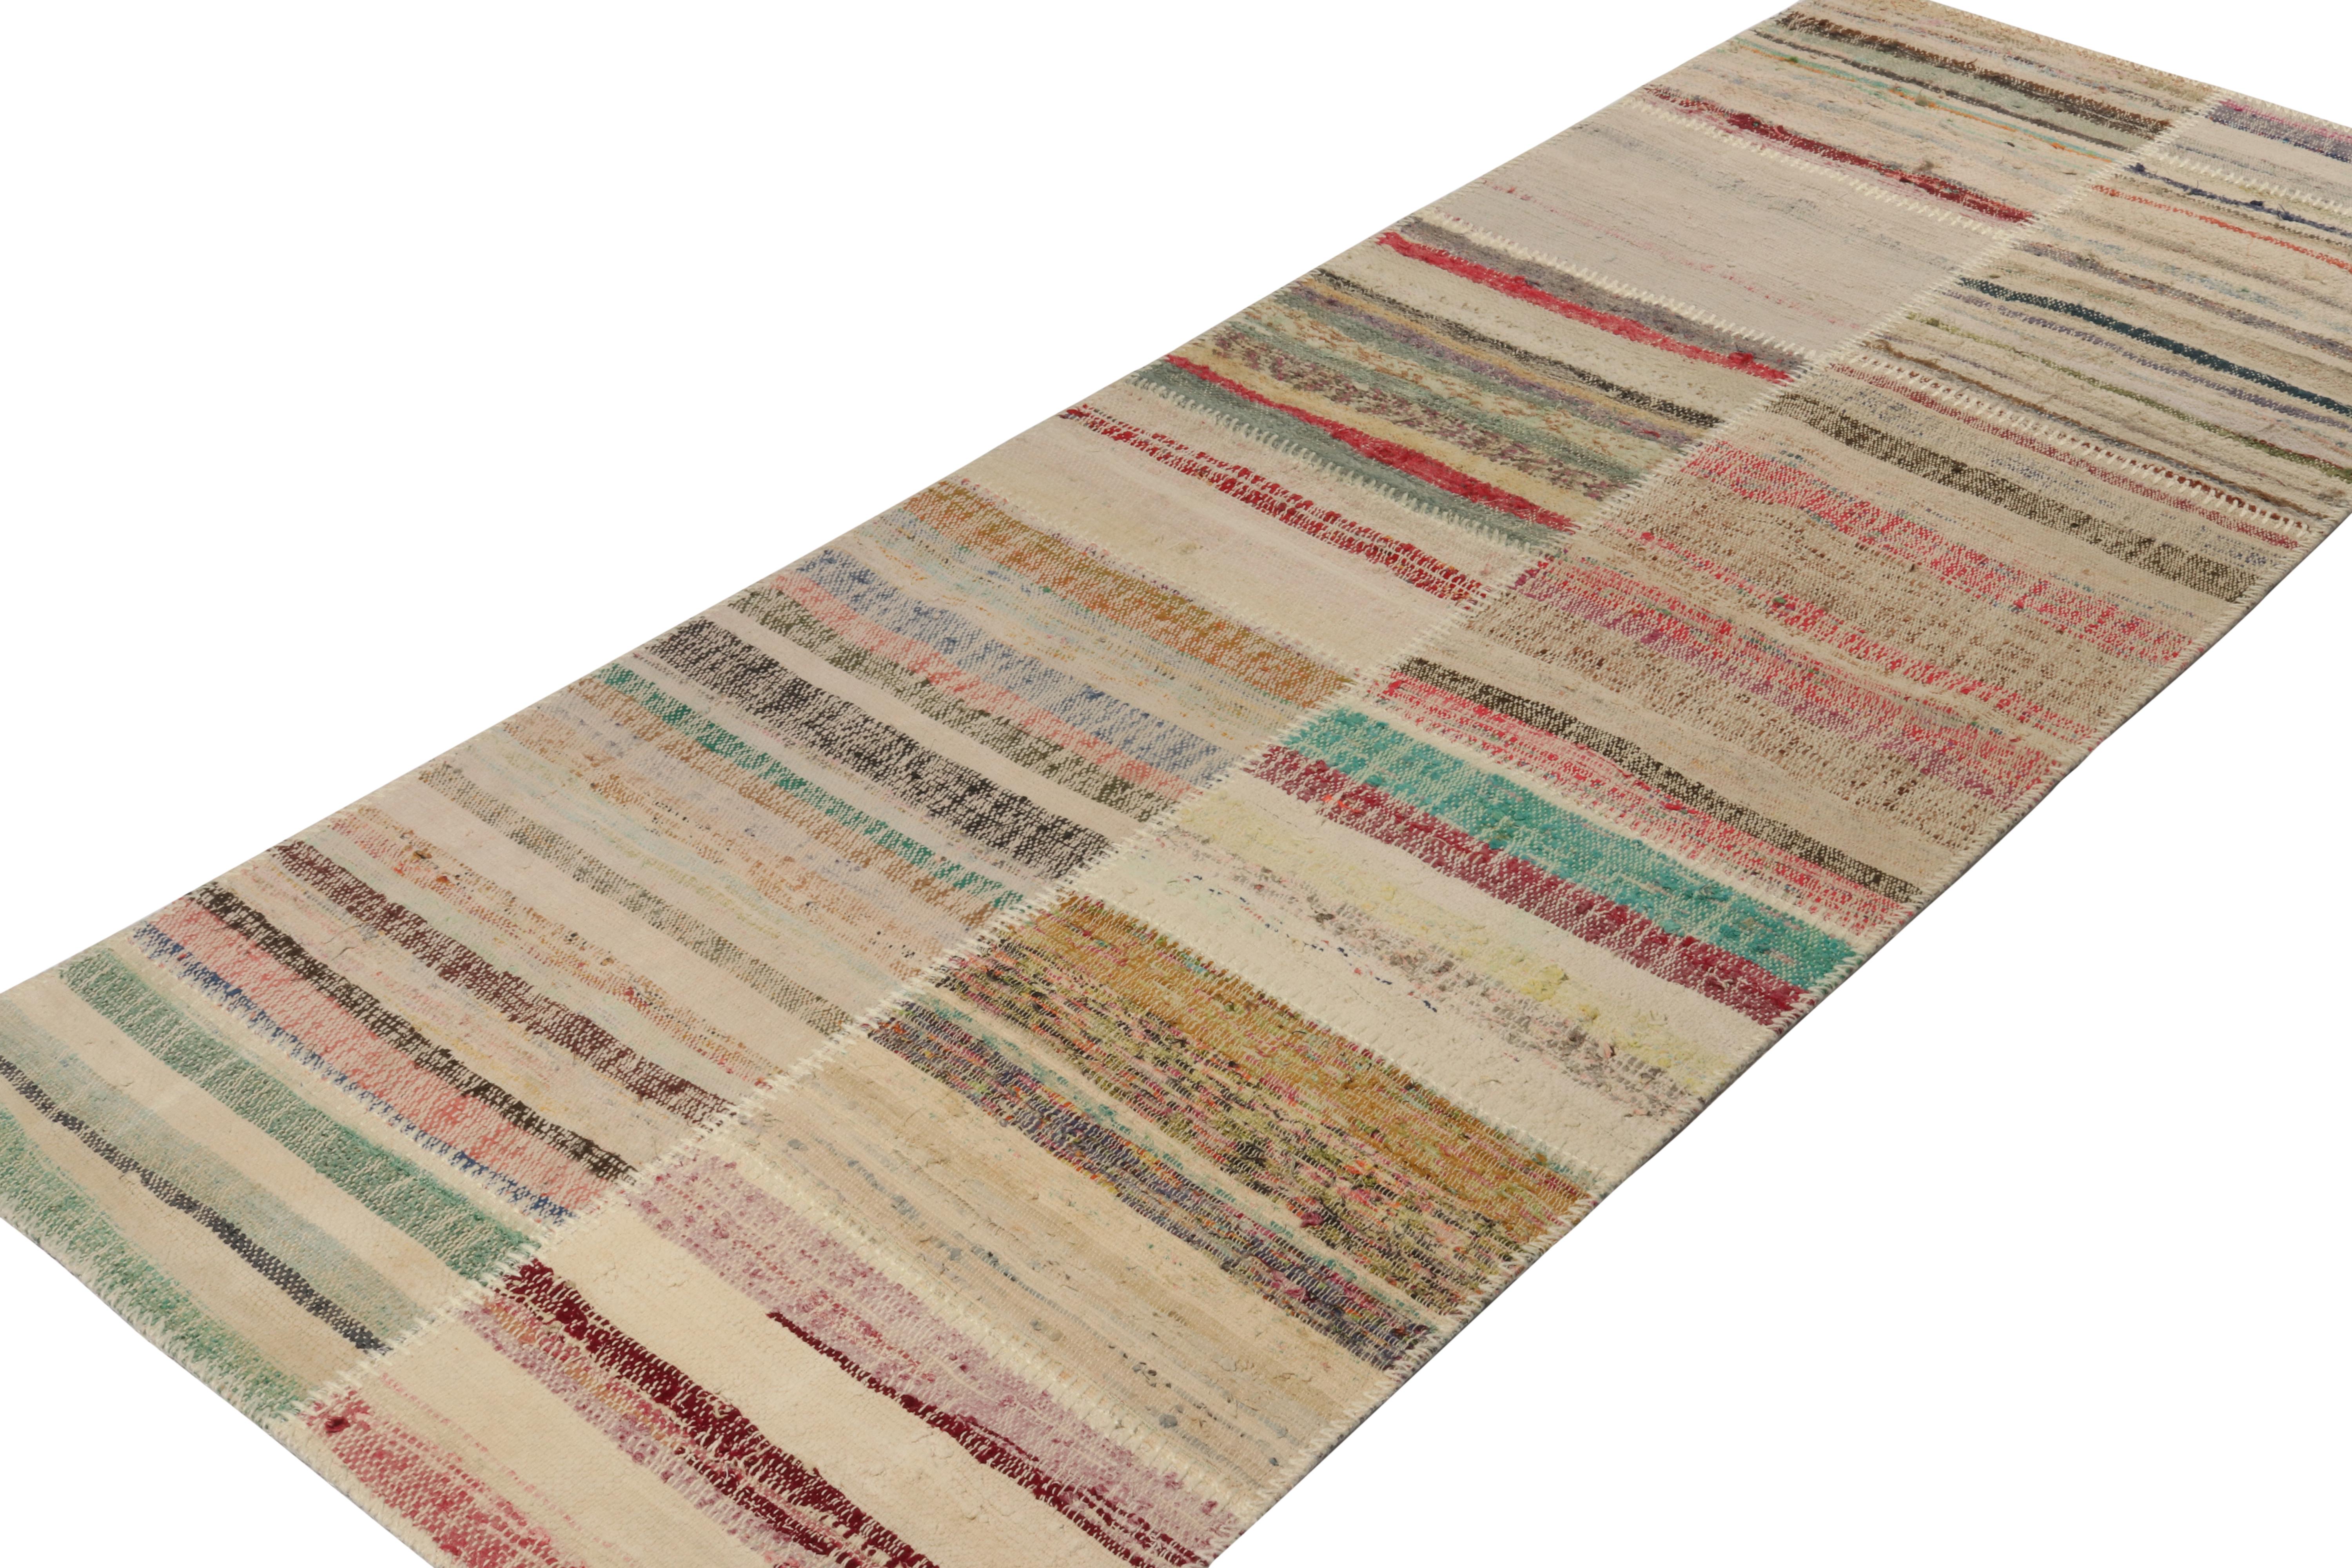 Tissé à la main en laine, Rug & Kilim présente un chemin de table contemporain 3x8 de sa nouvelle collection innovante de kilims en patchwork. 

Sur le Design : 

Cette technique de tissage plat réutilise des fils vintage dans des rayures et des